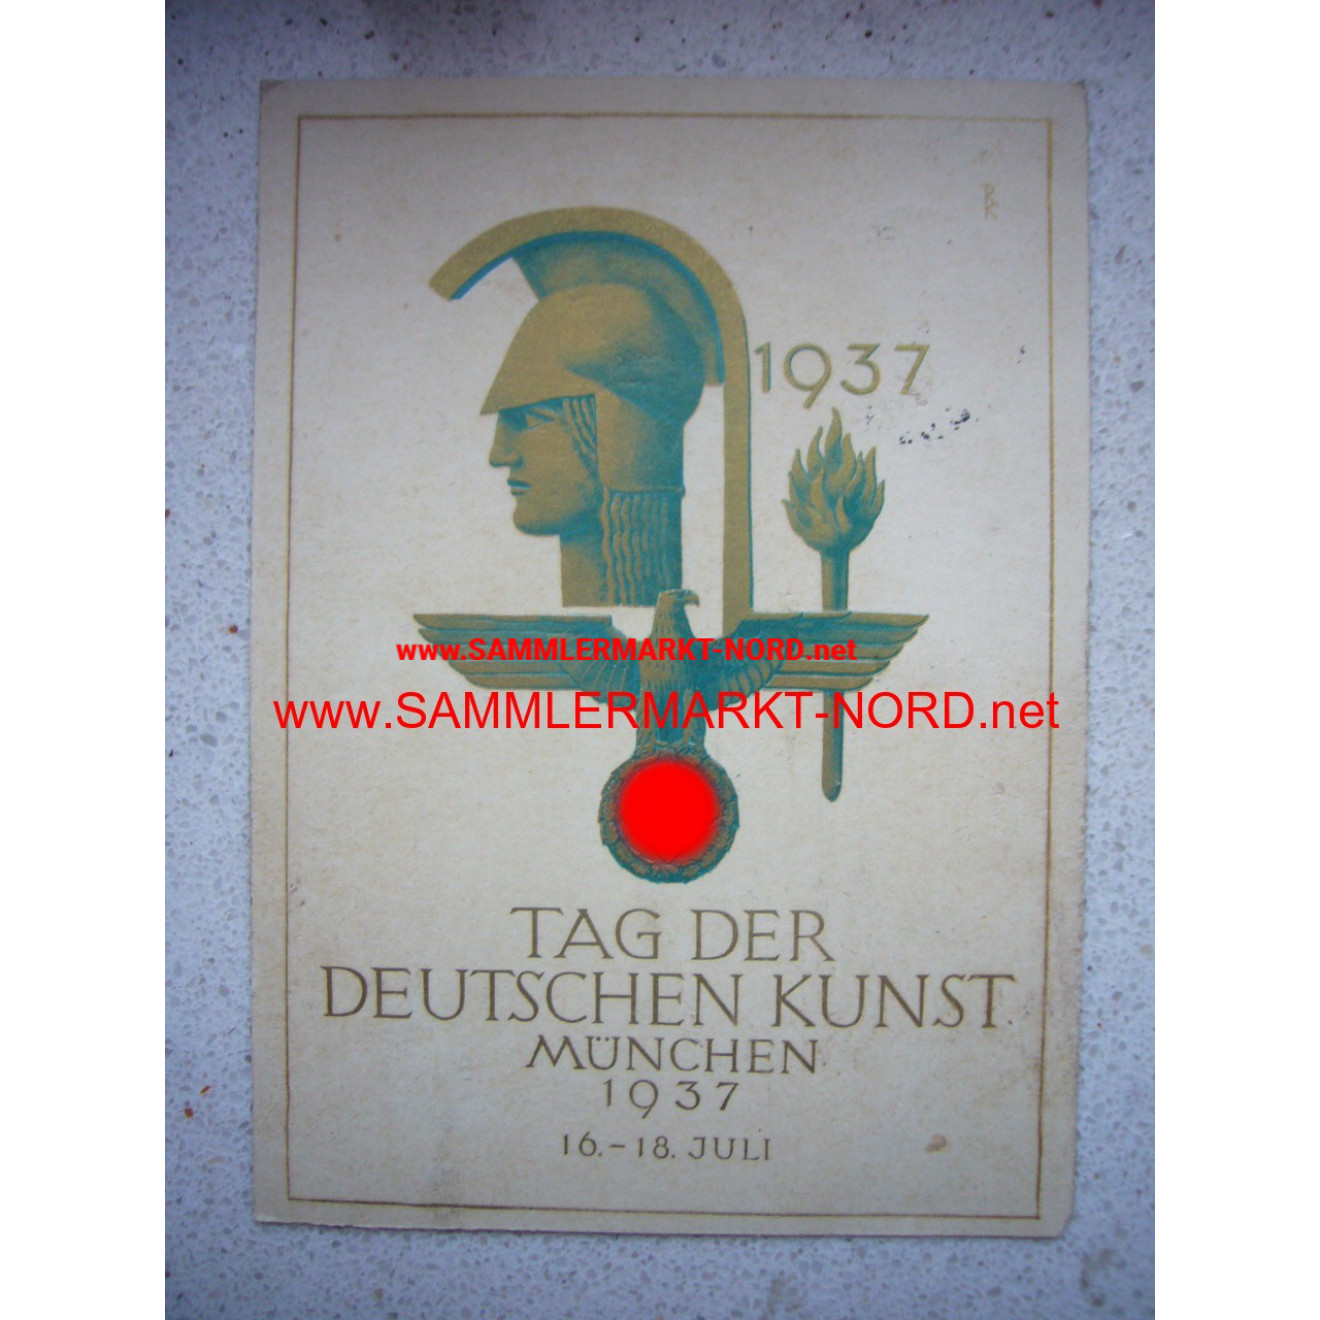 Tag der Deutschen Kunst München 1937 - Postkarte